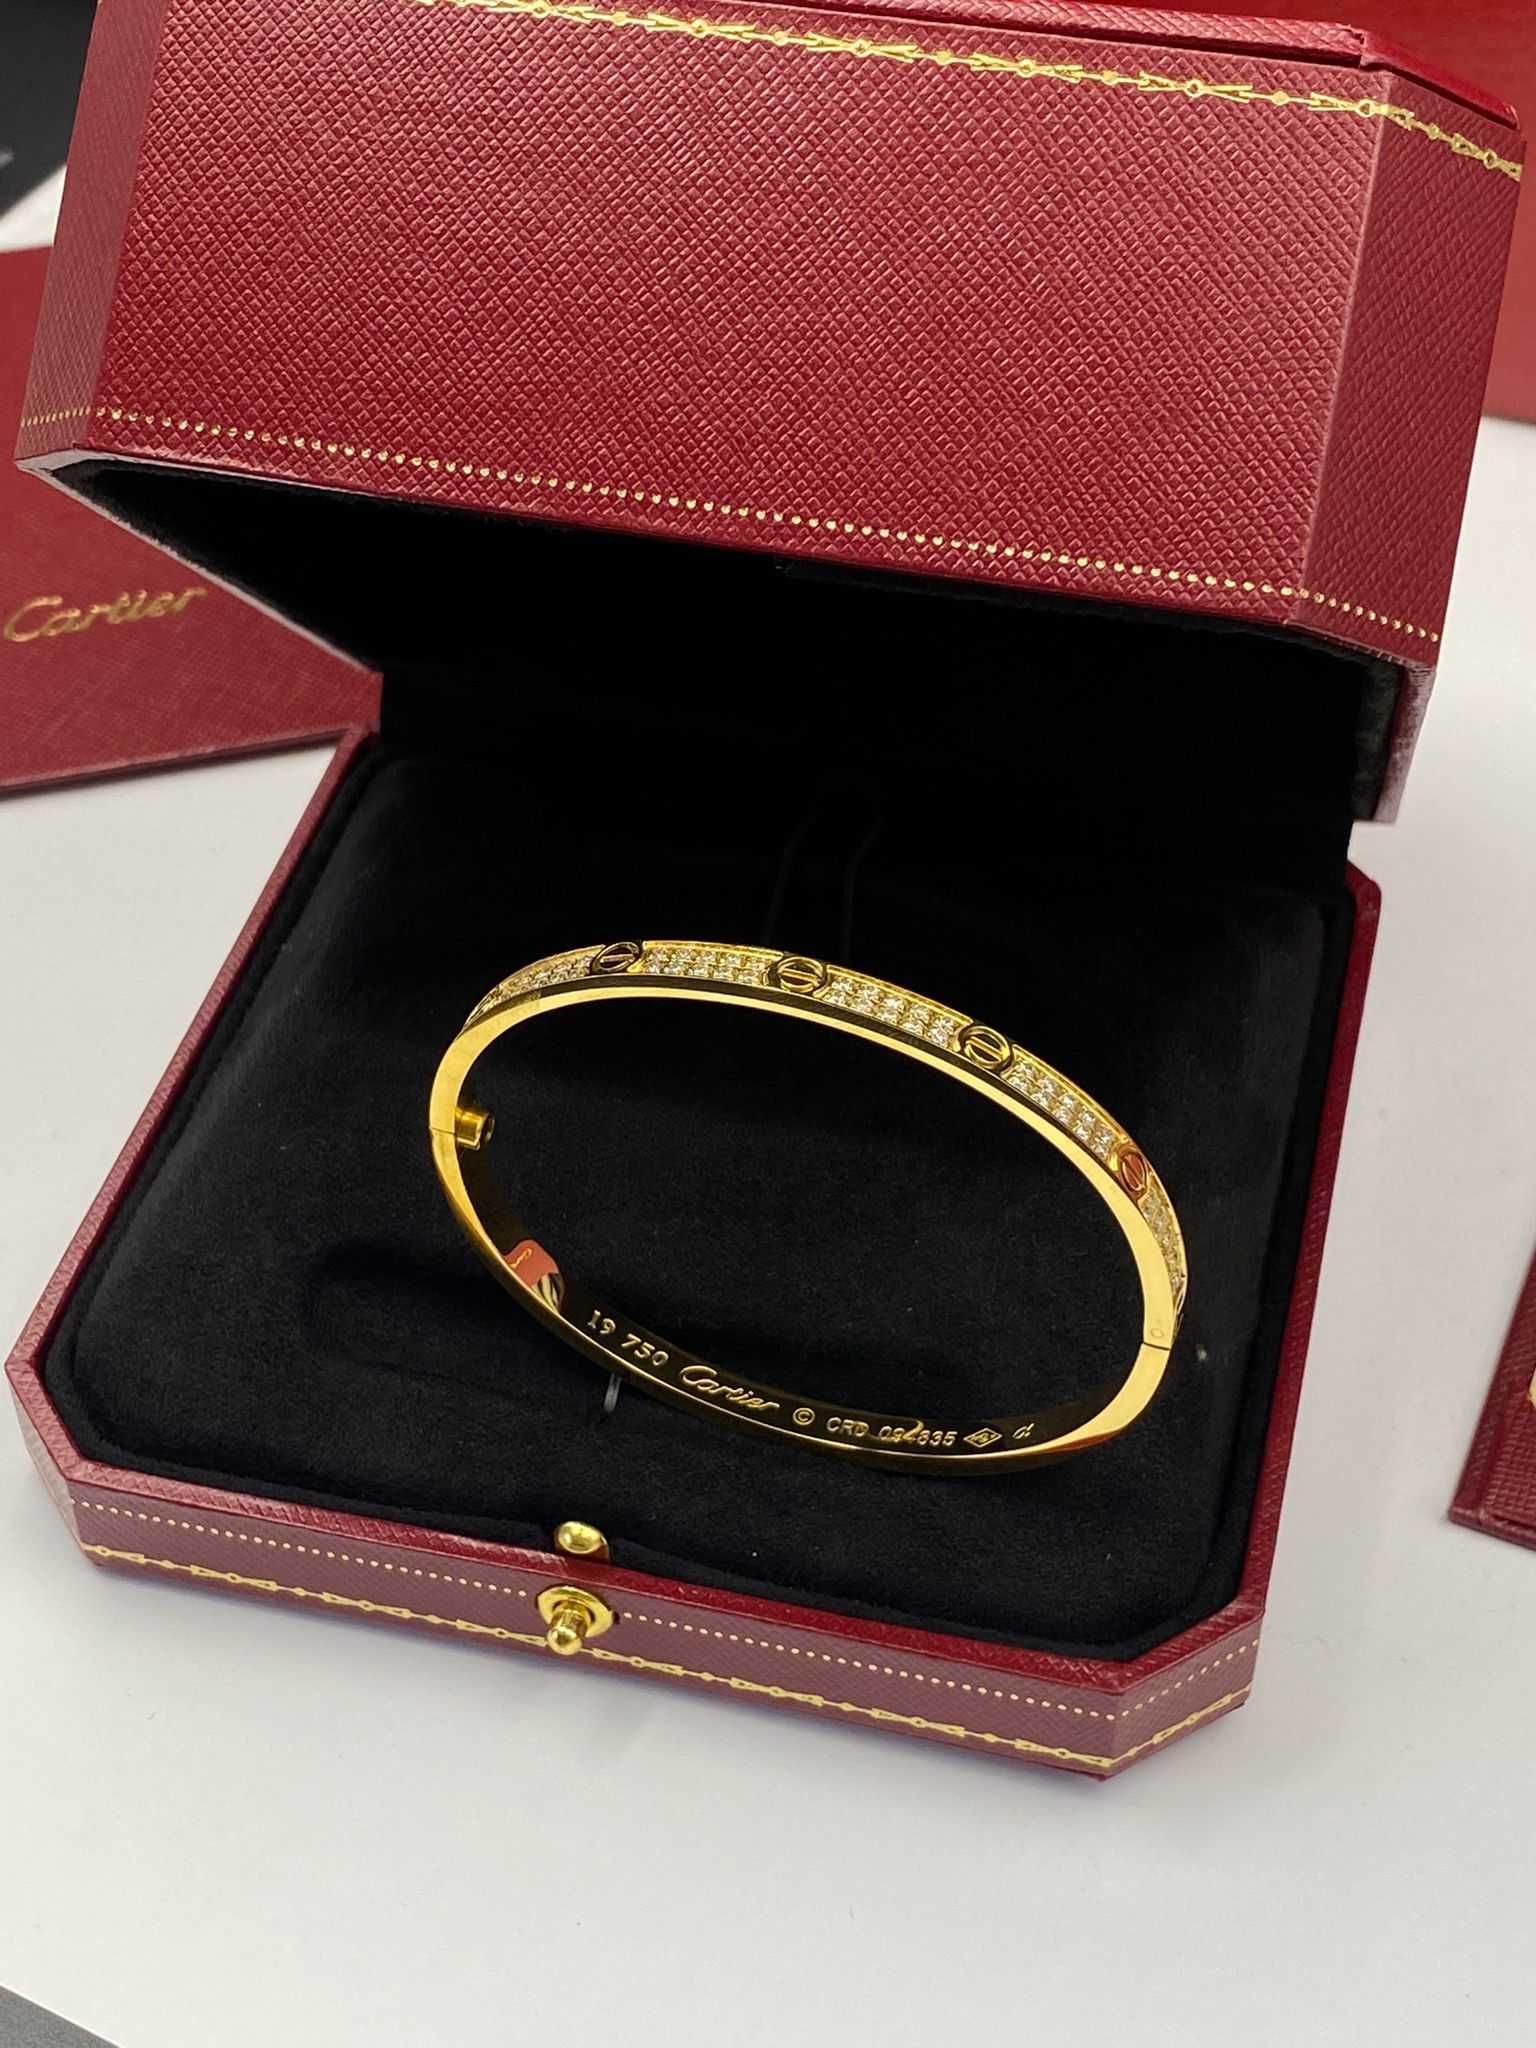 Brățară Cartier LOVE 19 Gold 750 cu diamante